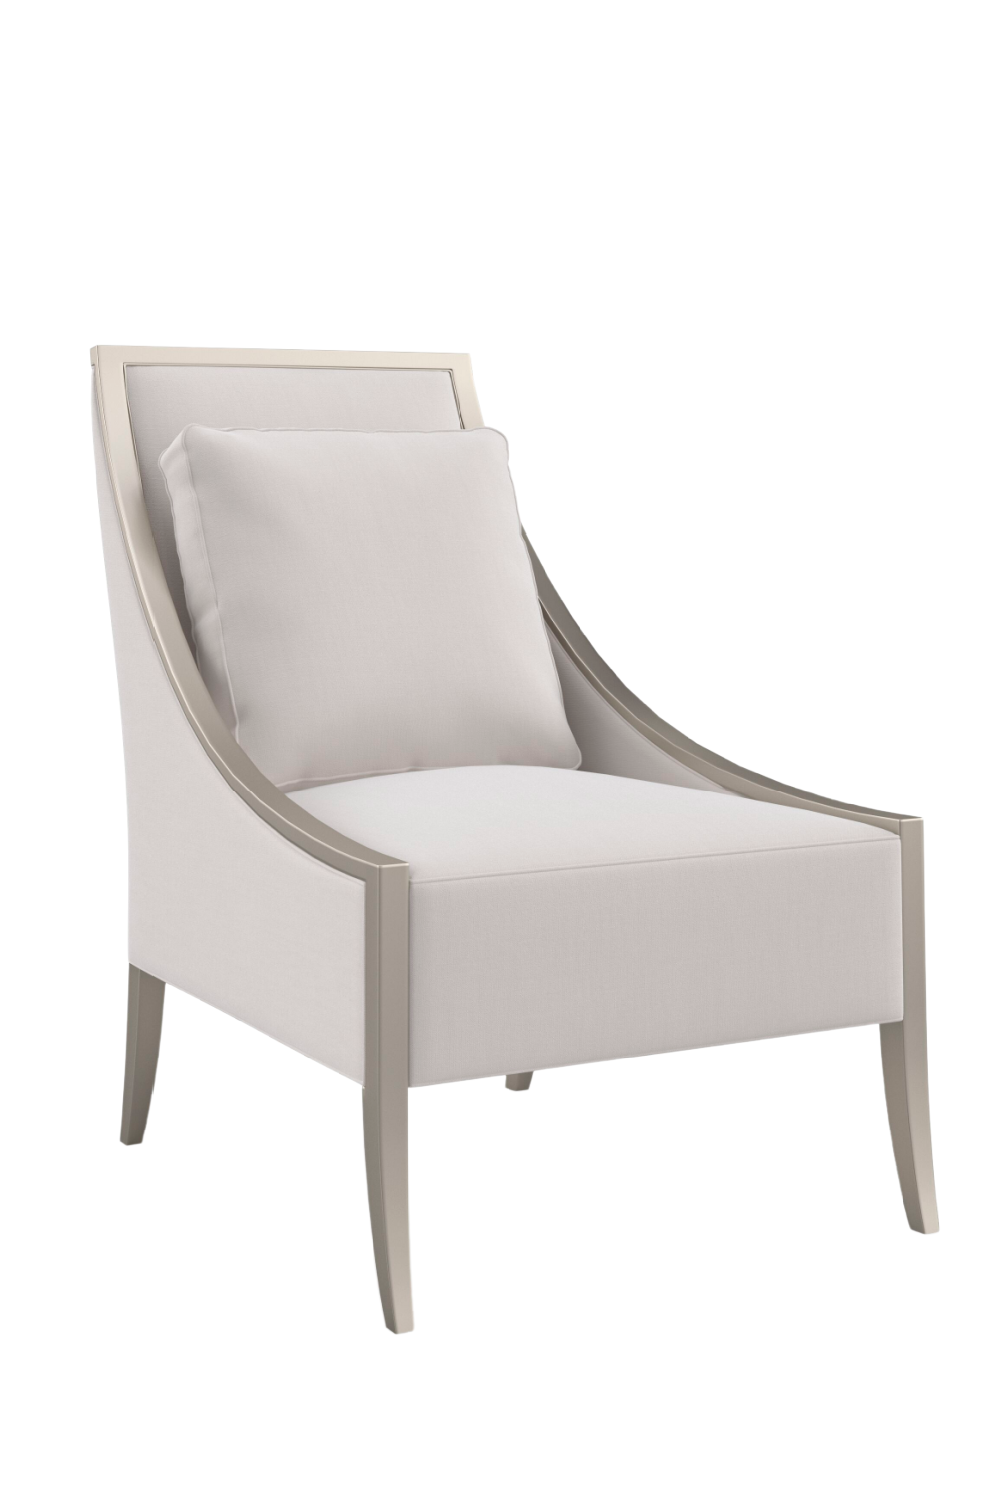 Cream Accent Chair | Caracole A Fine Line | Oroa.com